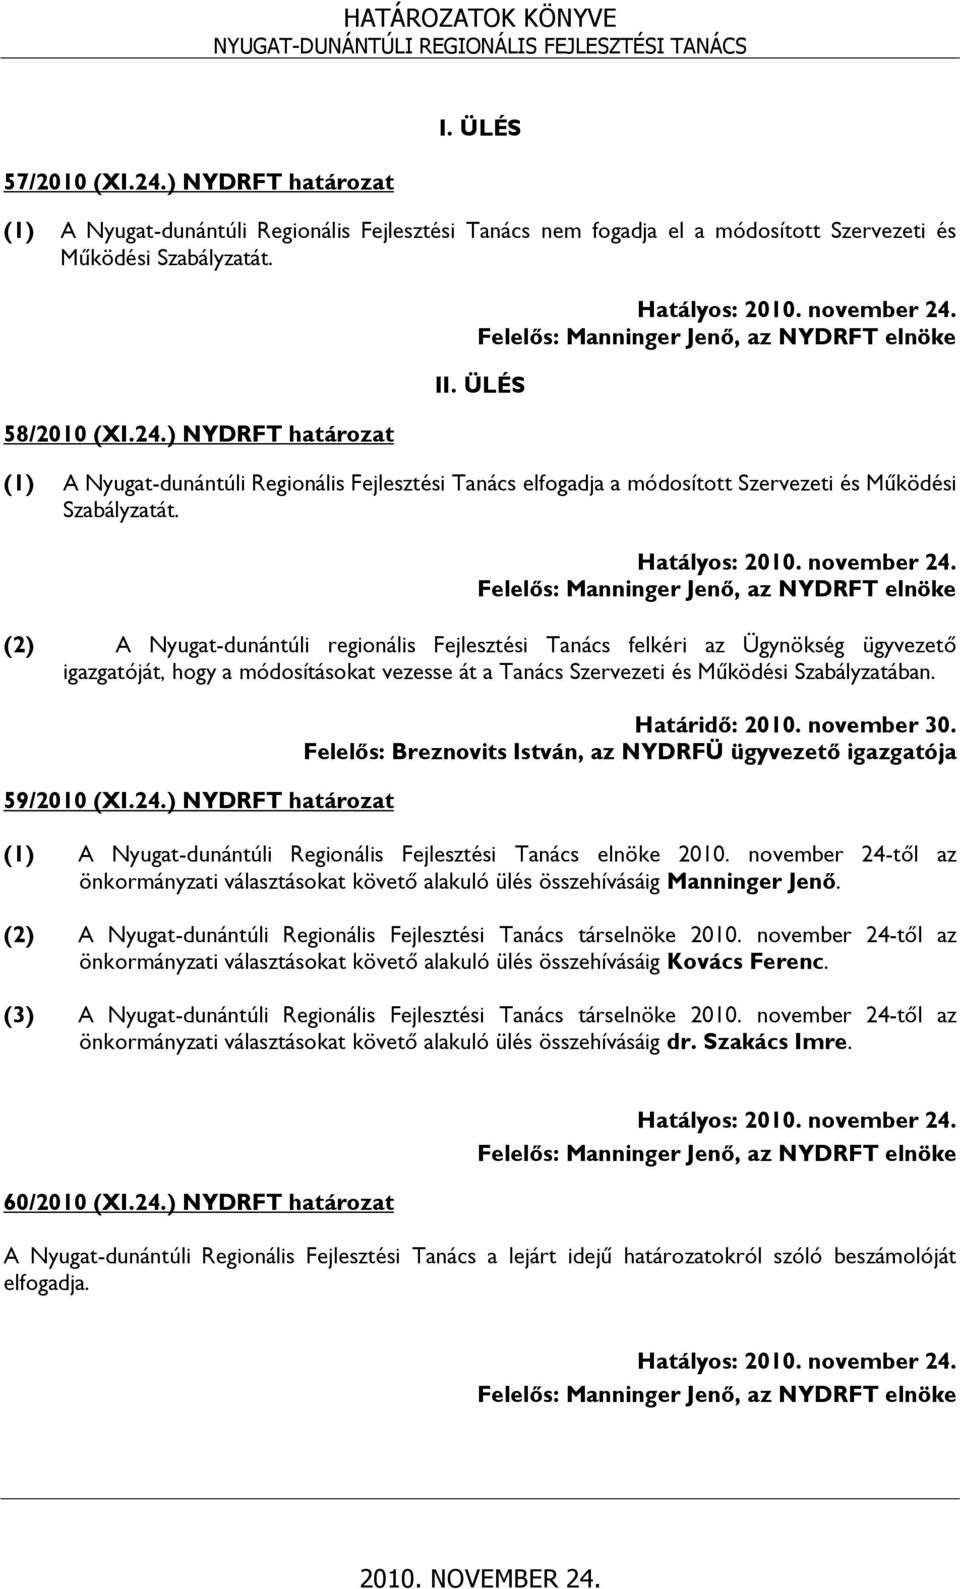 (2) A Nyugat-dunántúli regionális Fejlesztési Tanács felkéri az Ügynökség ügyvezető igazgatóját, hogy a módosításokat vezesse át a Tanács Szervezeti és Működési Szabályzatában. 59/2010 (XI.24.